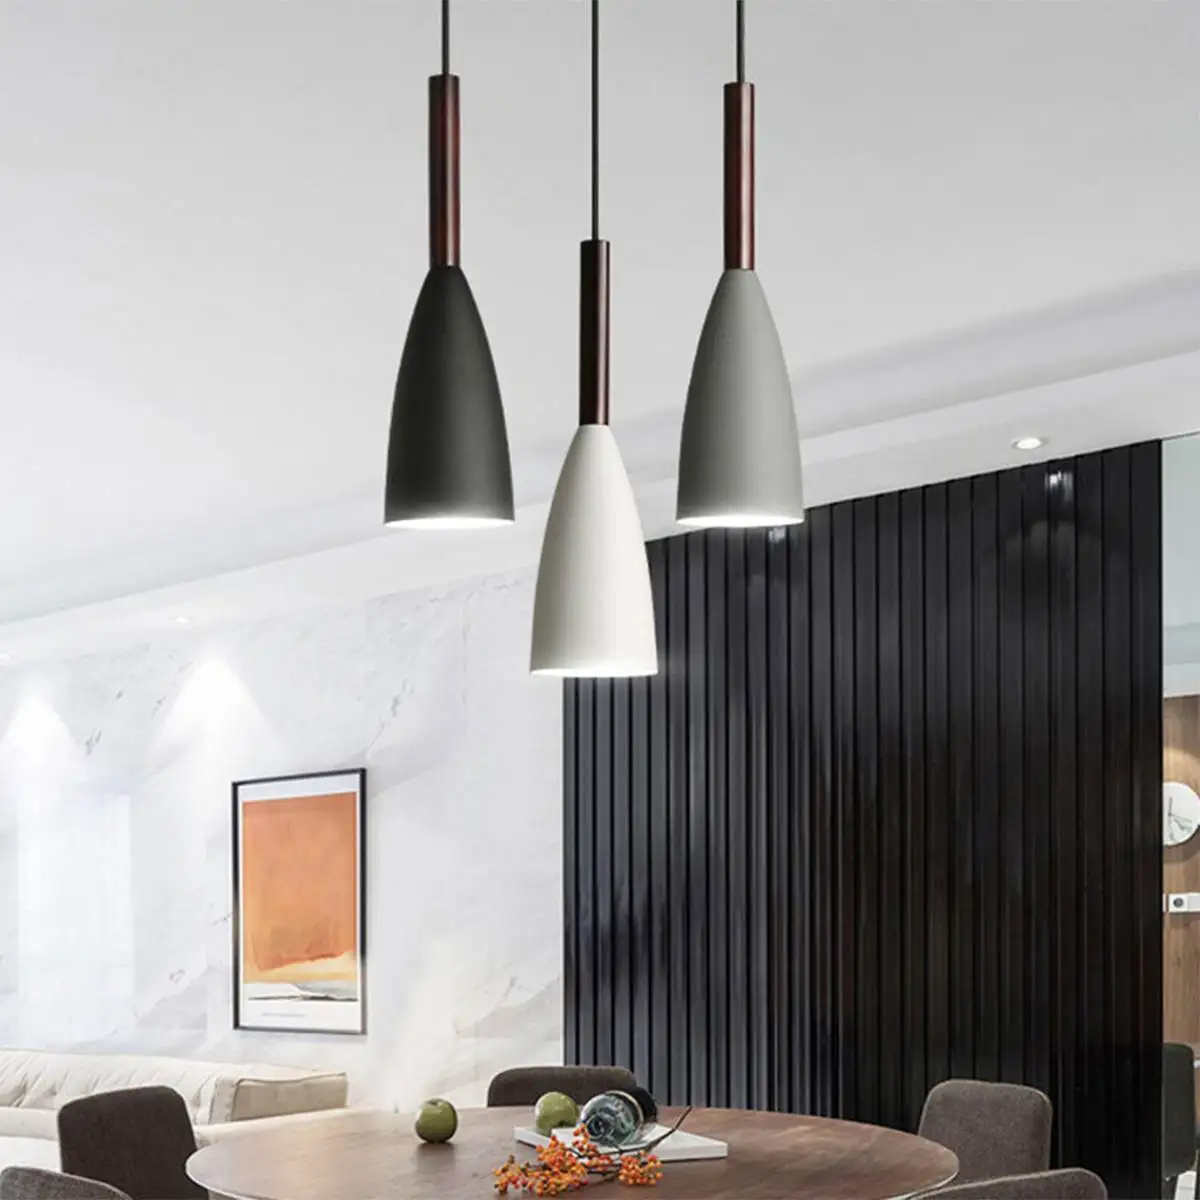 

Минималистичные подвесные светильники E27 в скандинавском стиле, 3 лампочки для обеденного стола, кухонного островка, современные светильни...